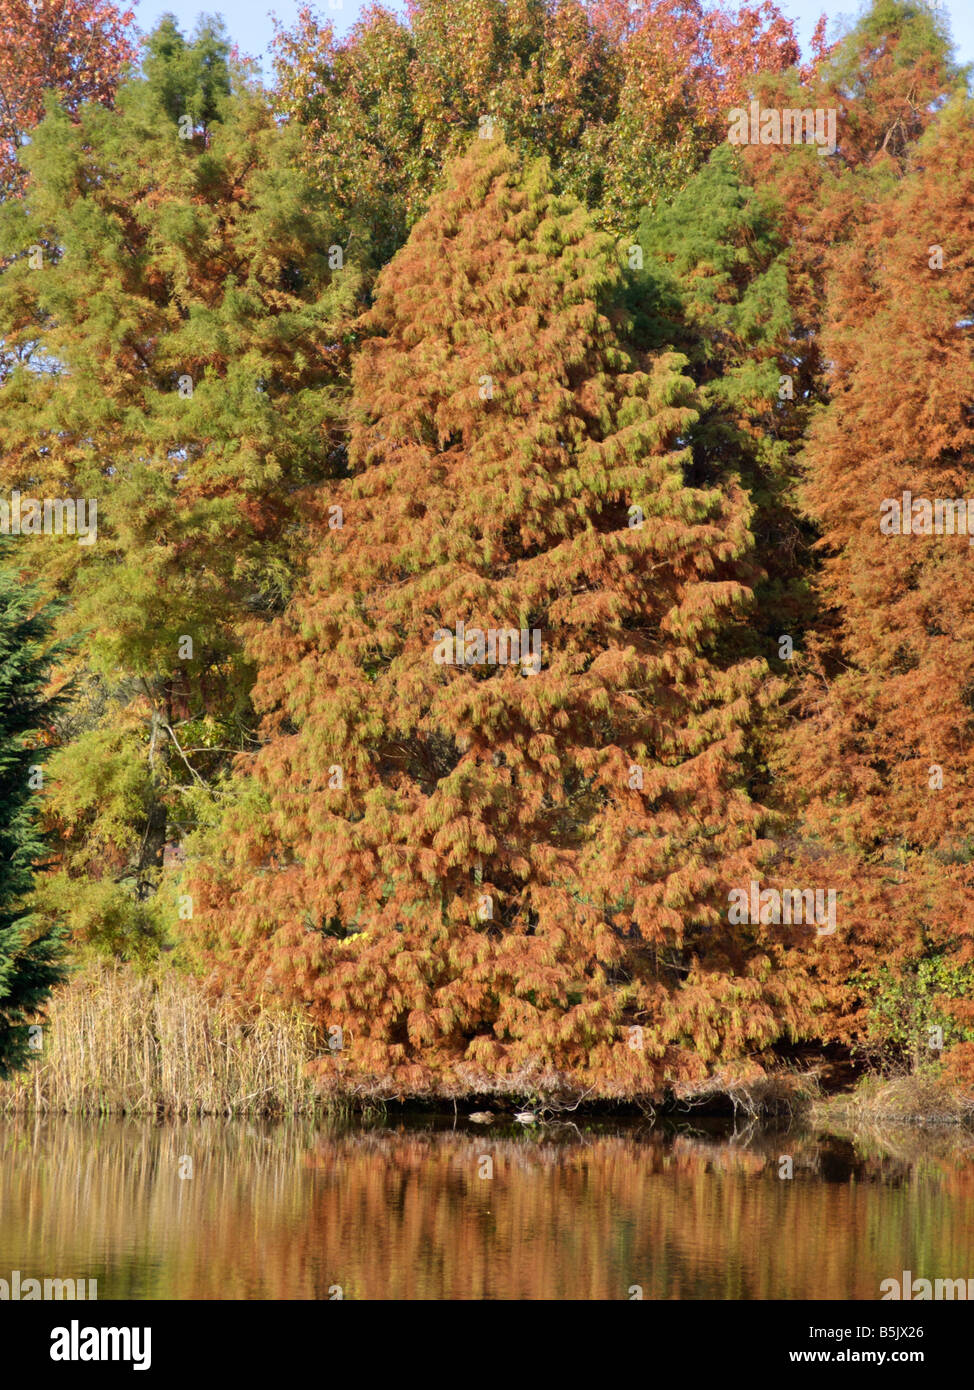 Dawn redwood (Metasequoia glyptostroboides) Stock Photo